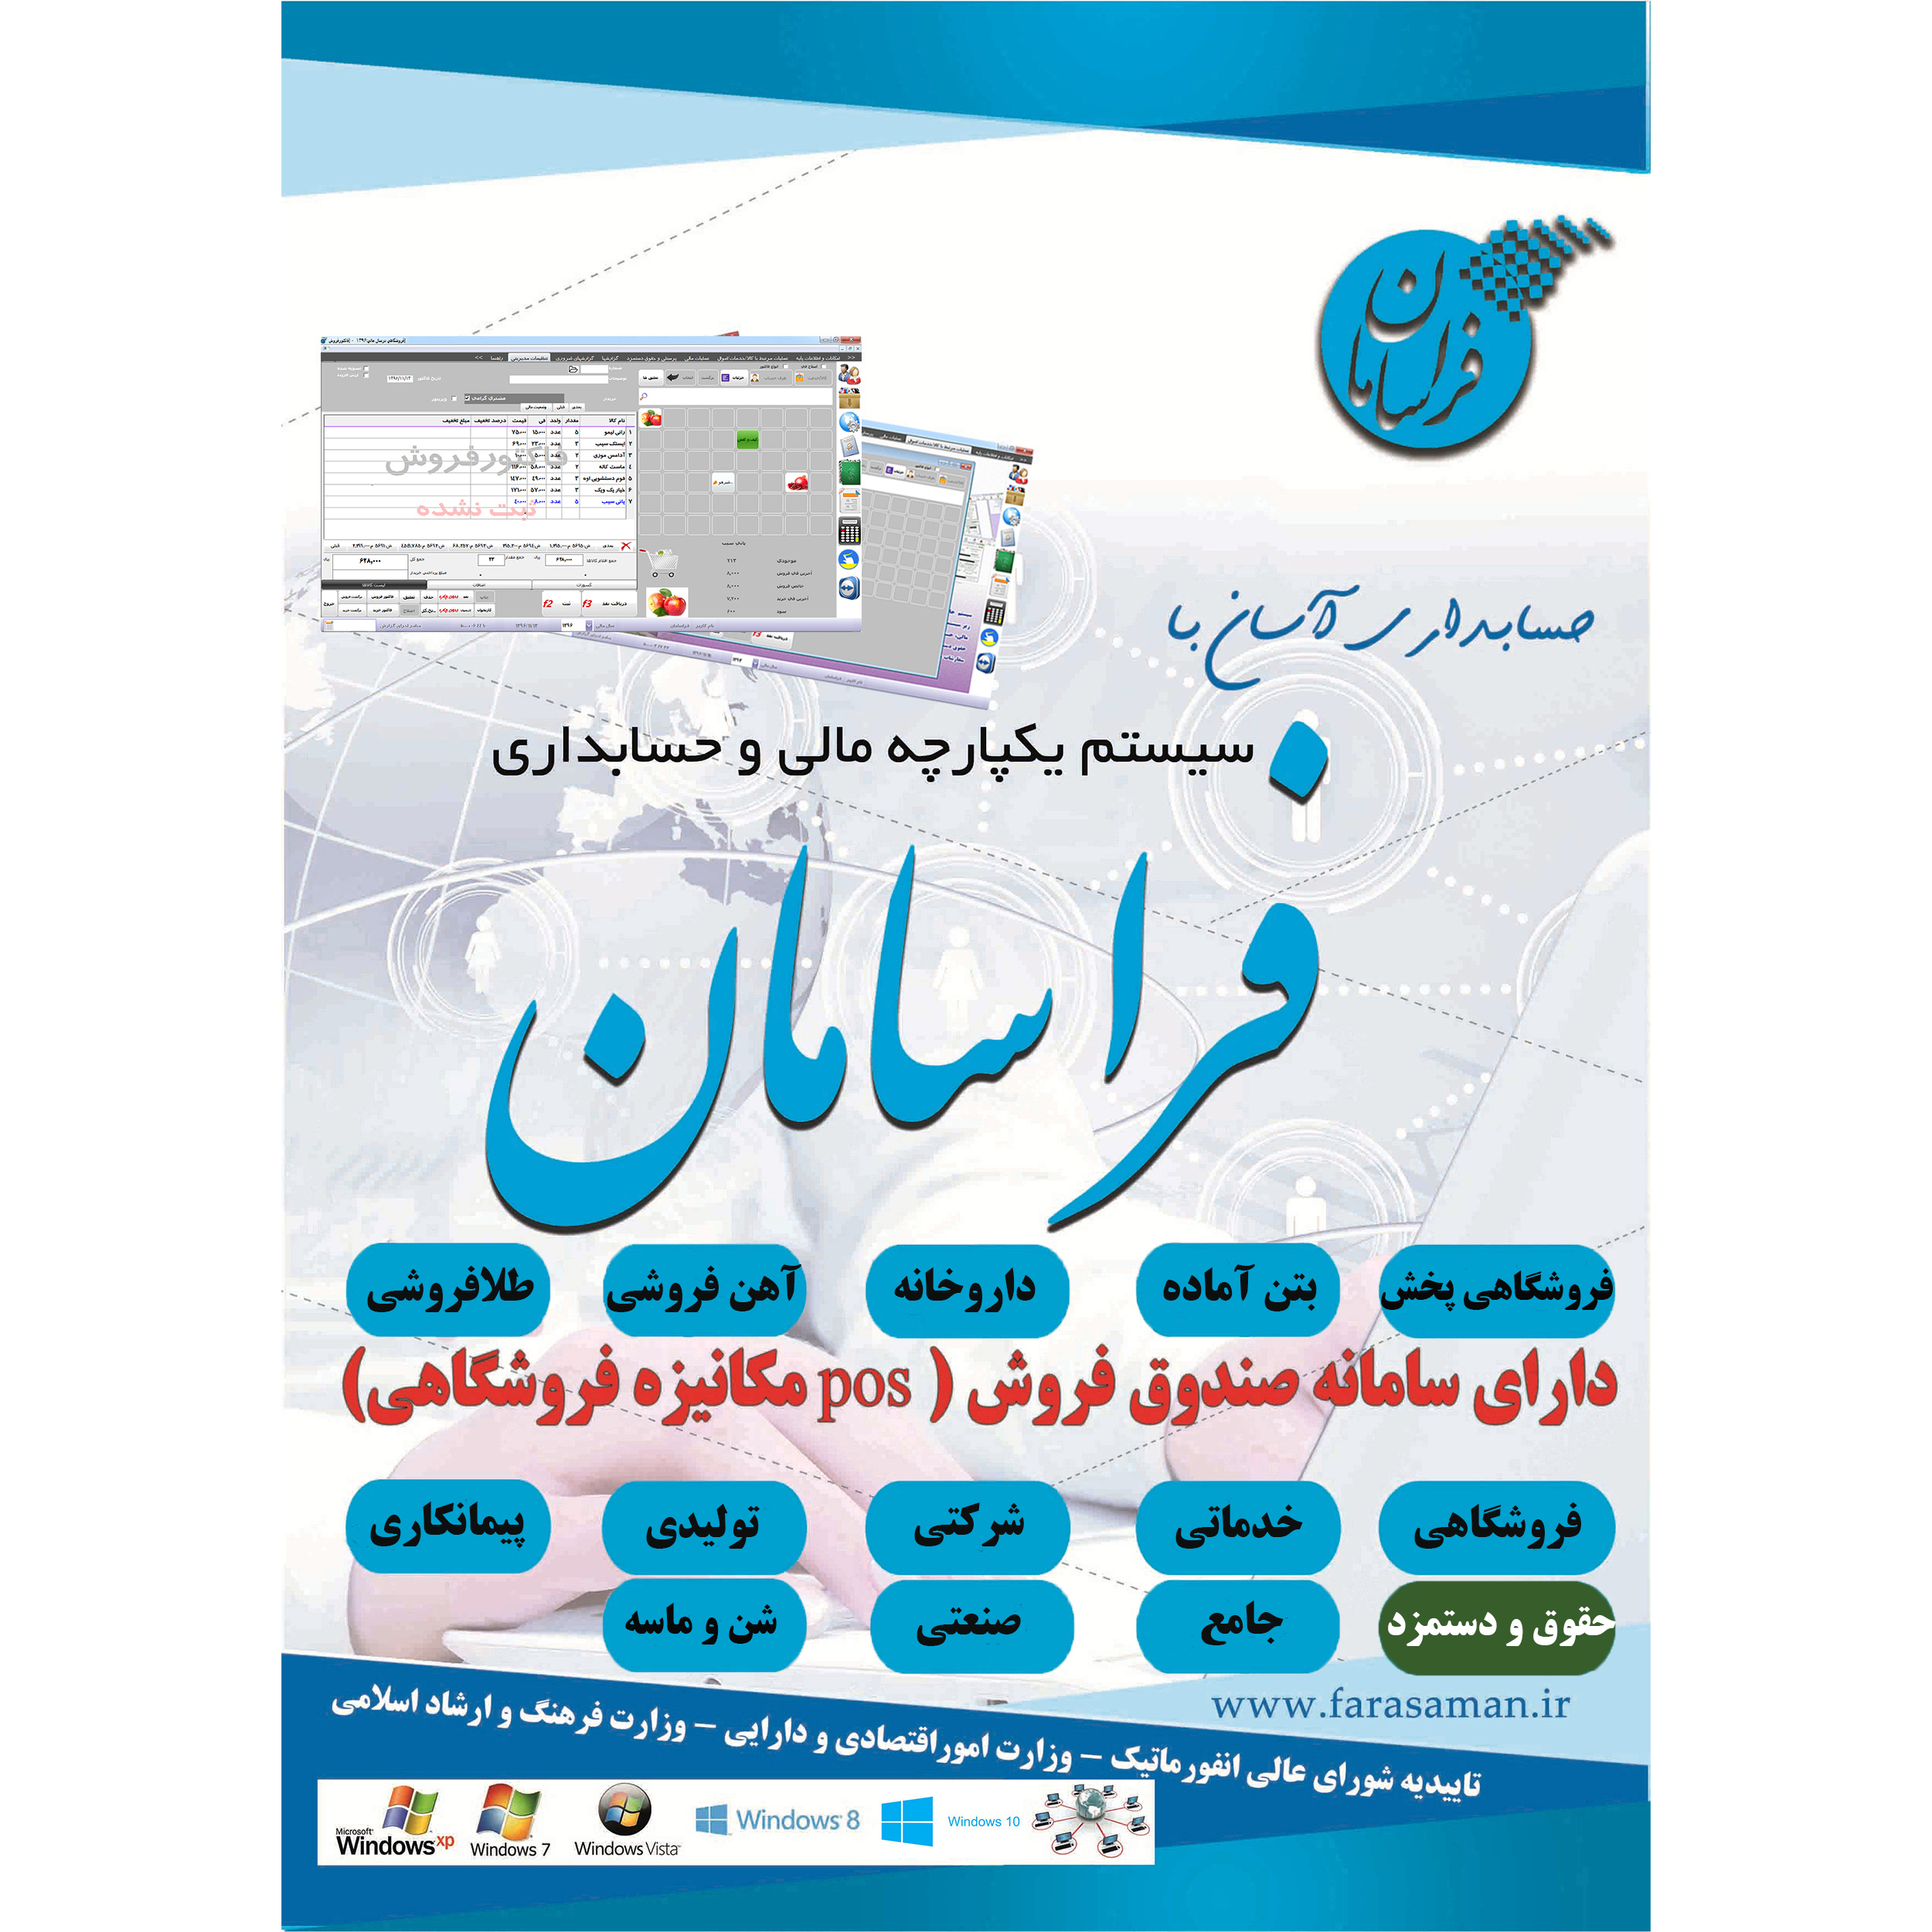 نرم افزار حسابداری فراسامان نسخه حقوق و دستمزد